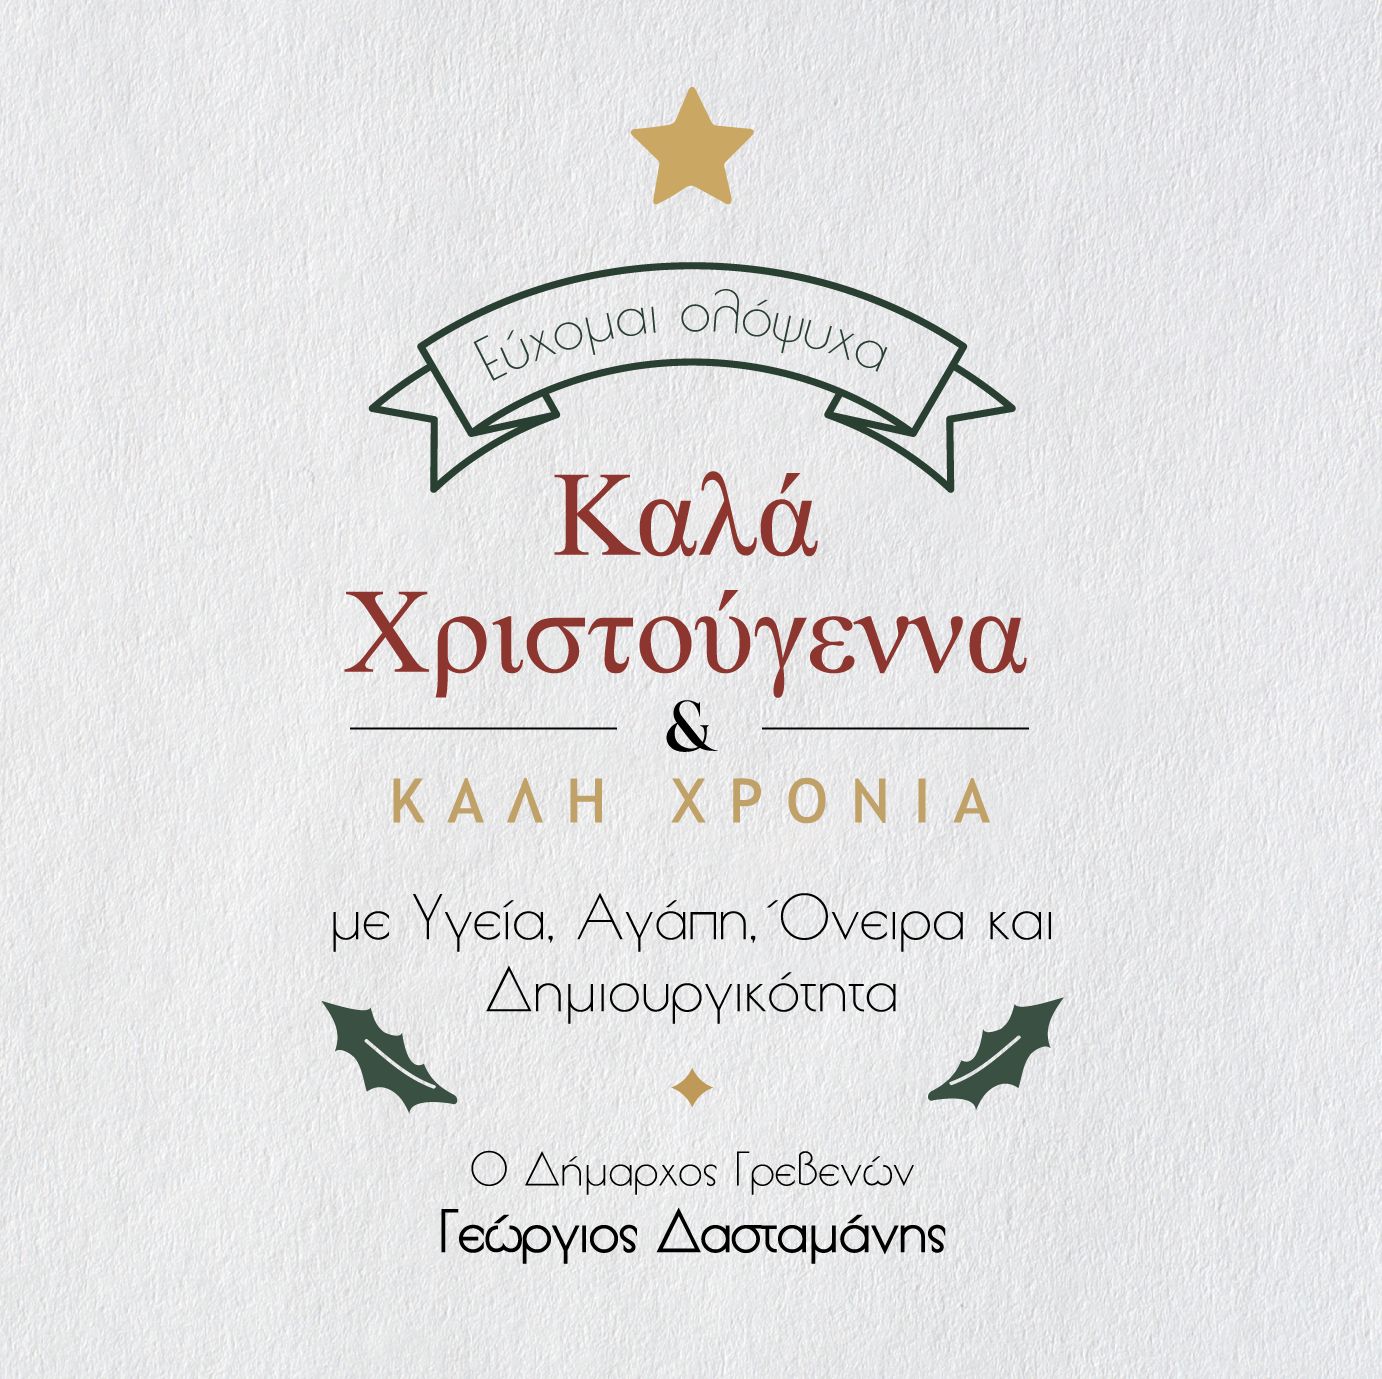 Χριστουγεννιάτικες Ευχές Δημάρχου Γρεβενών Γιώργου Δασταμάνη